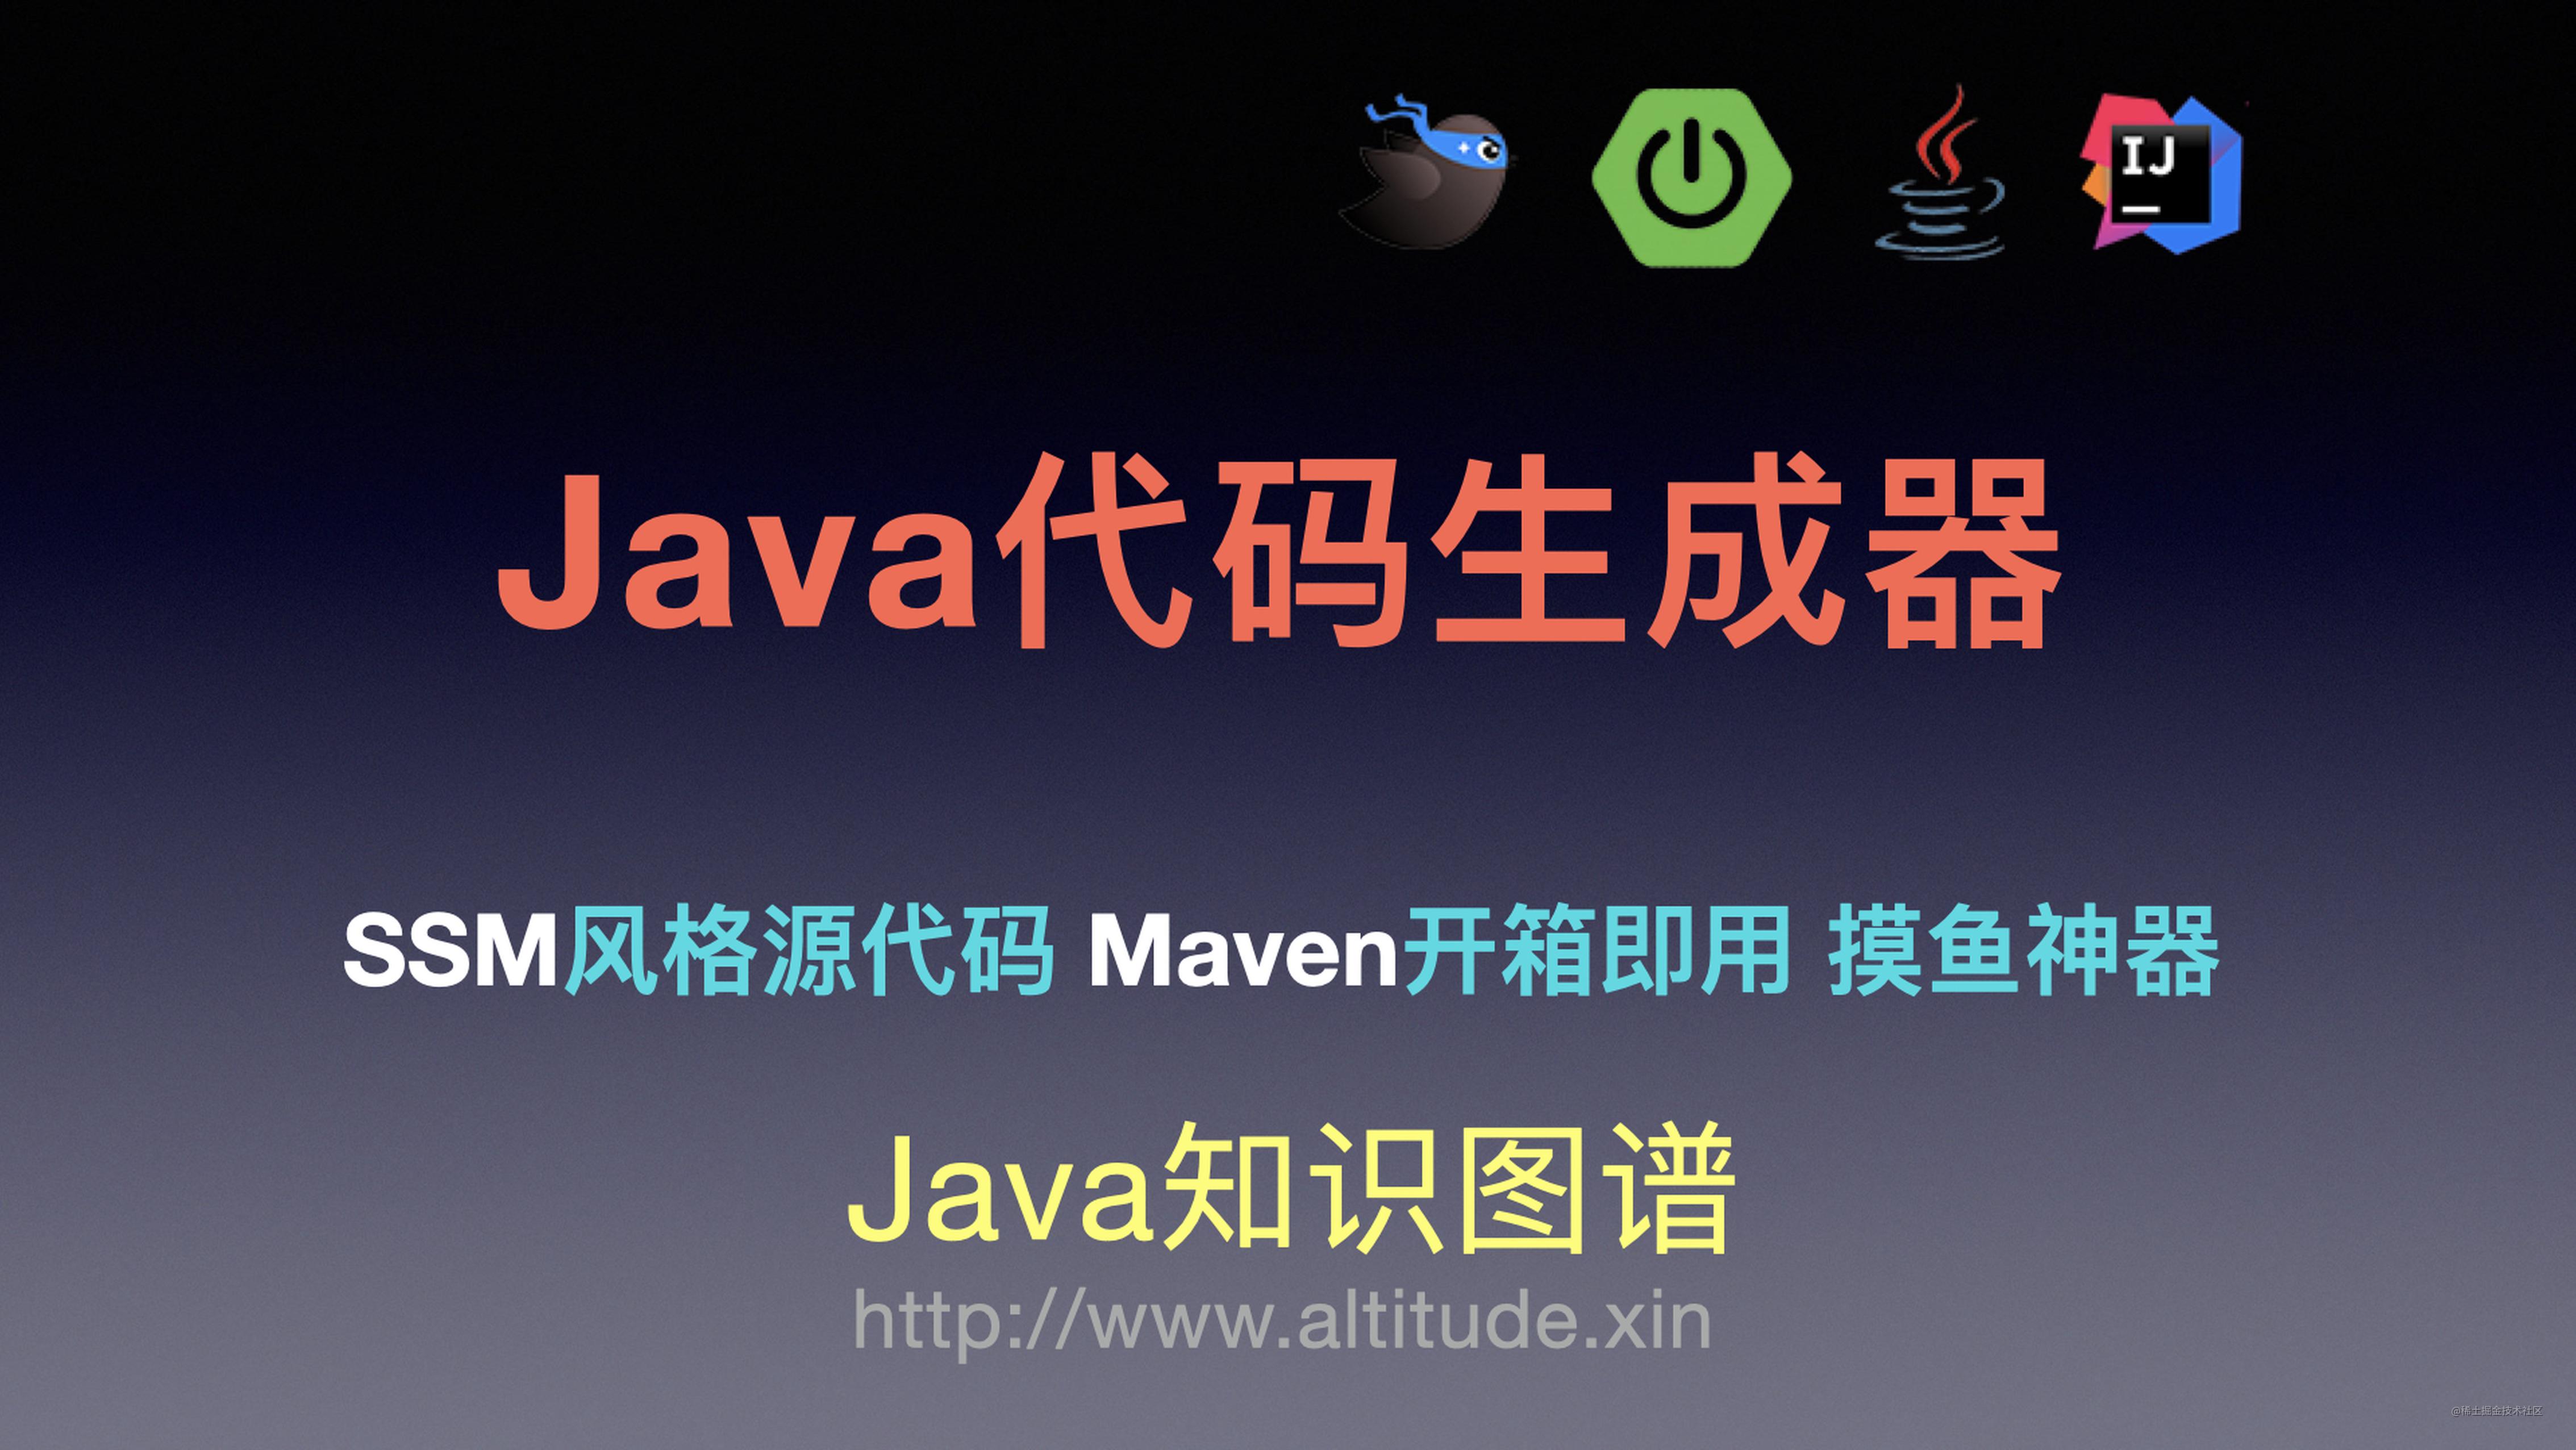 基于SSM源代码风格Java代码生成器 Maven版开箱即用 摸鱼神器